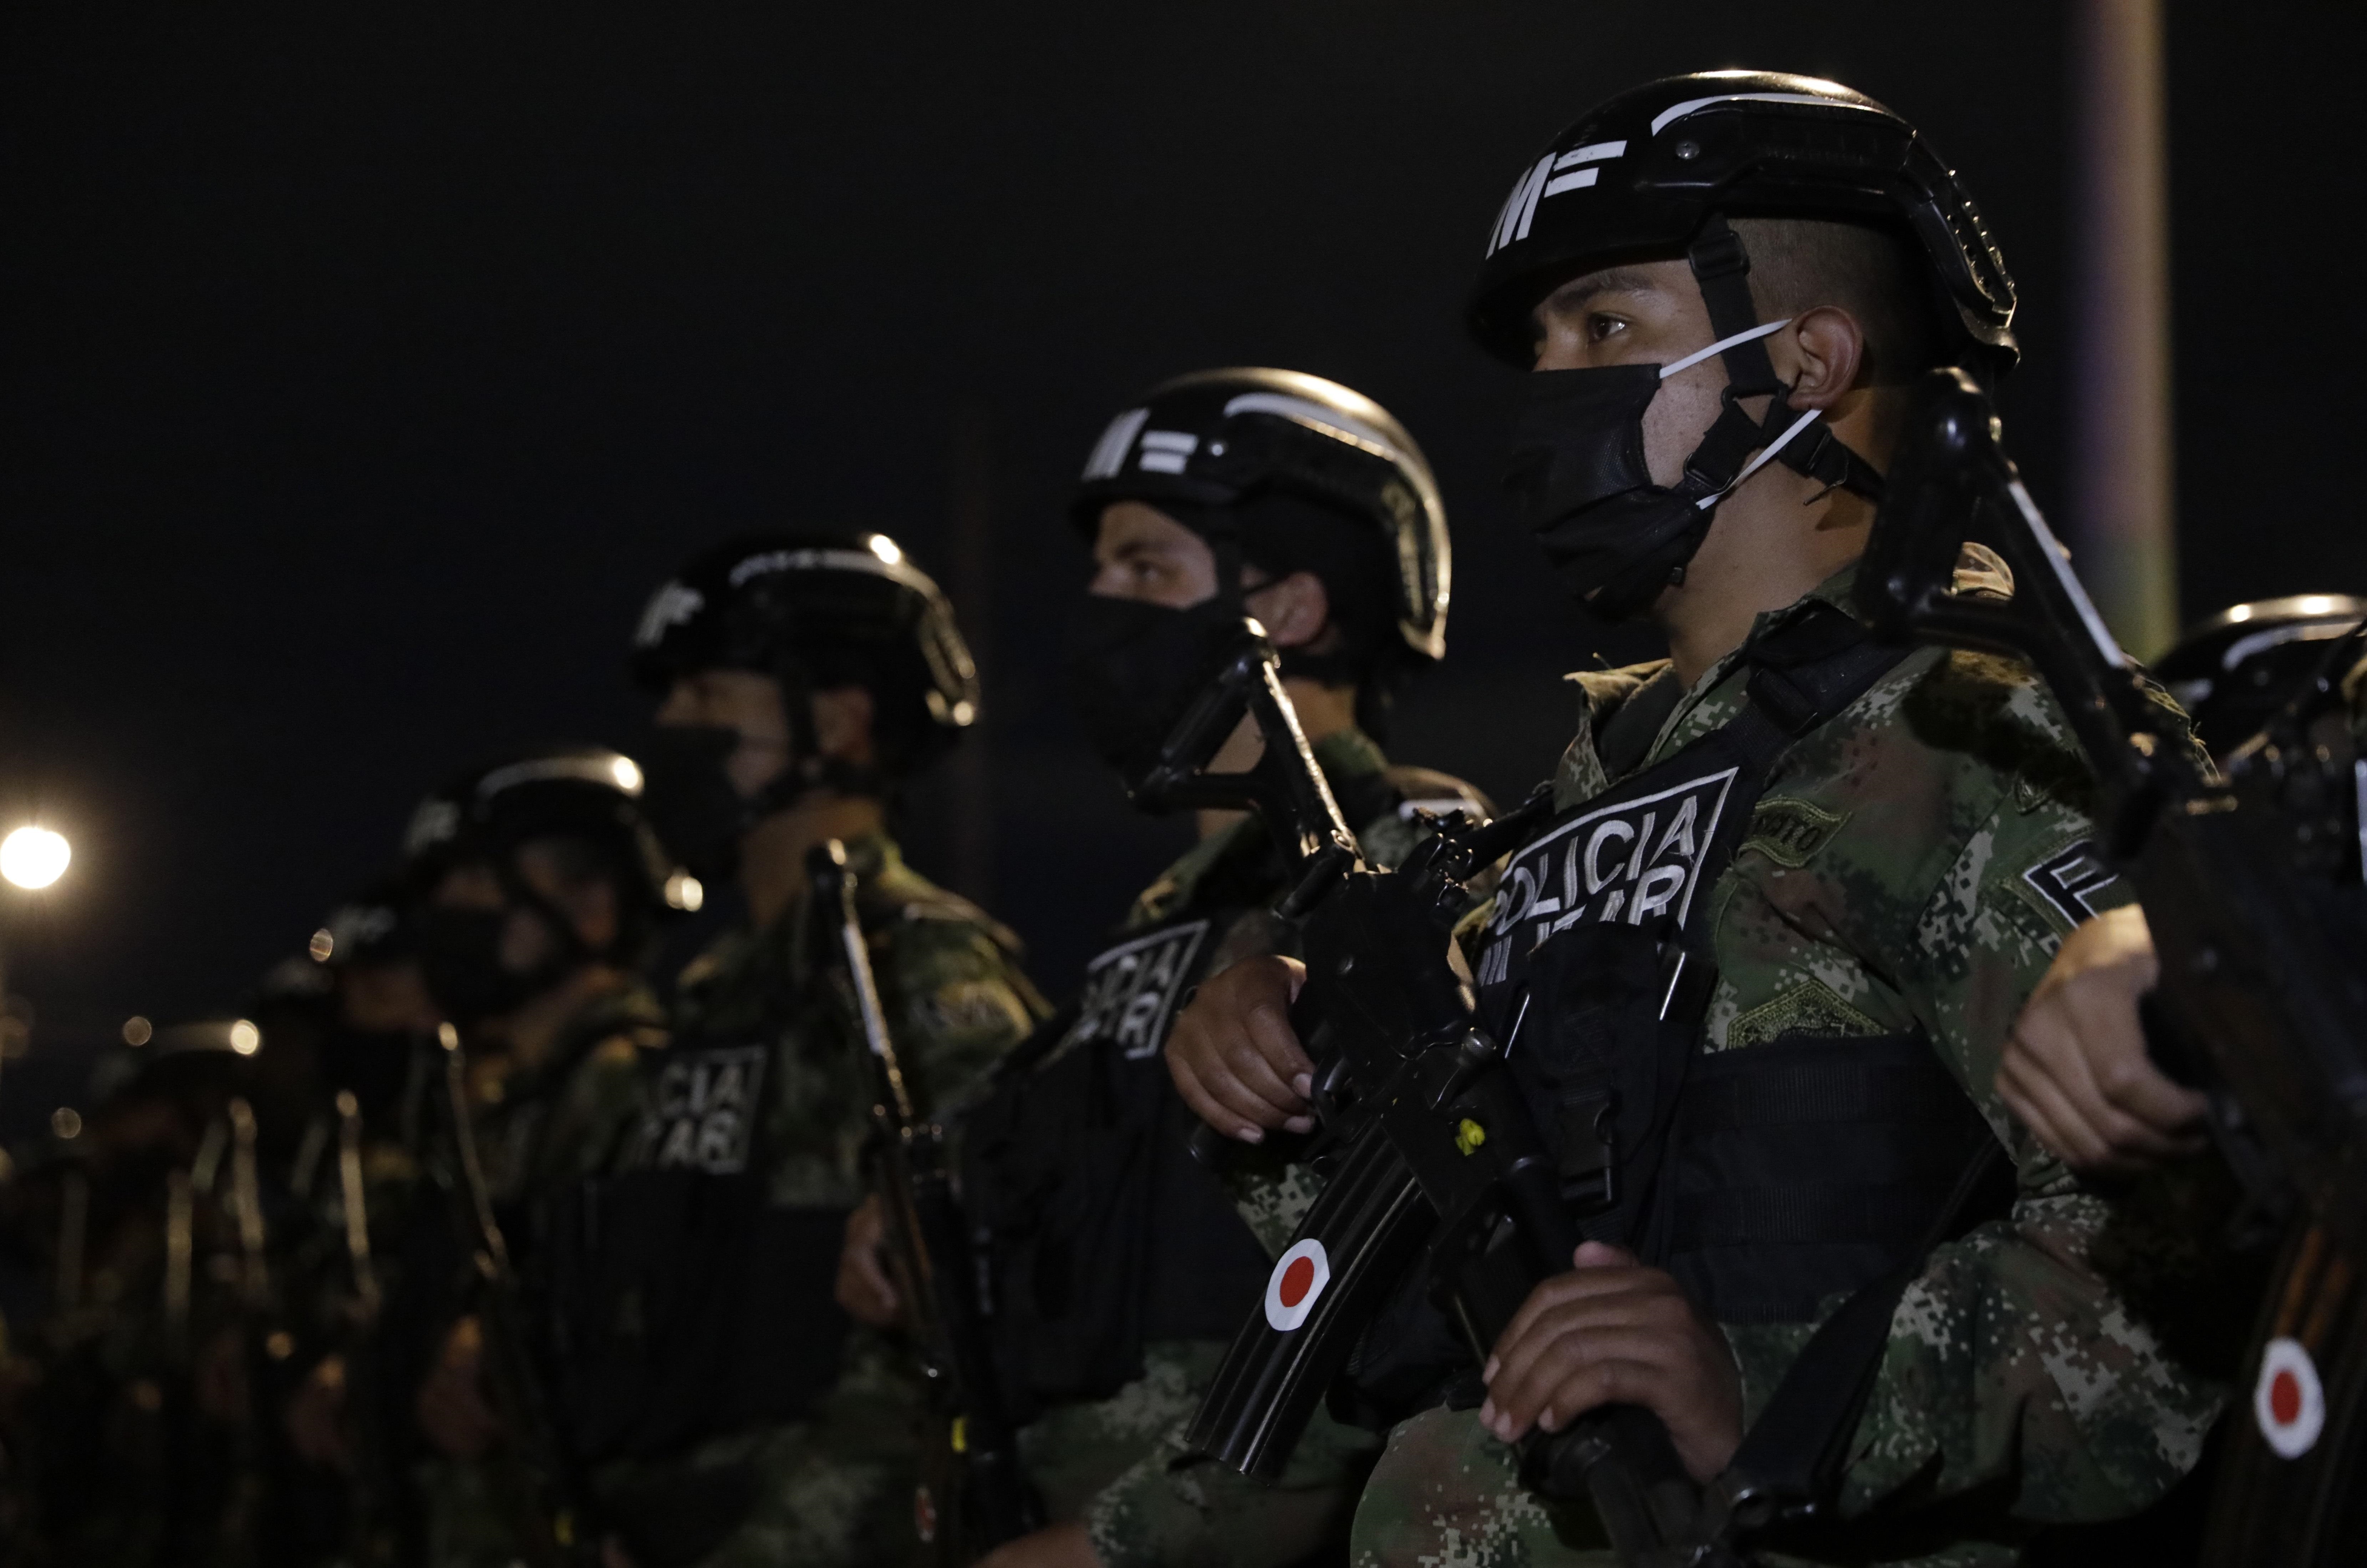 Archivo: Policía avanza en capturas contra Clan del Golfo en Antioquia  EFE/Carlos Ortega
